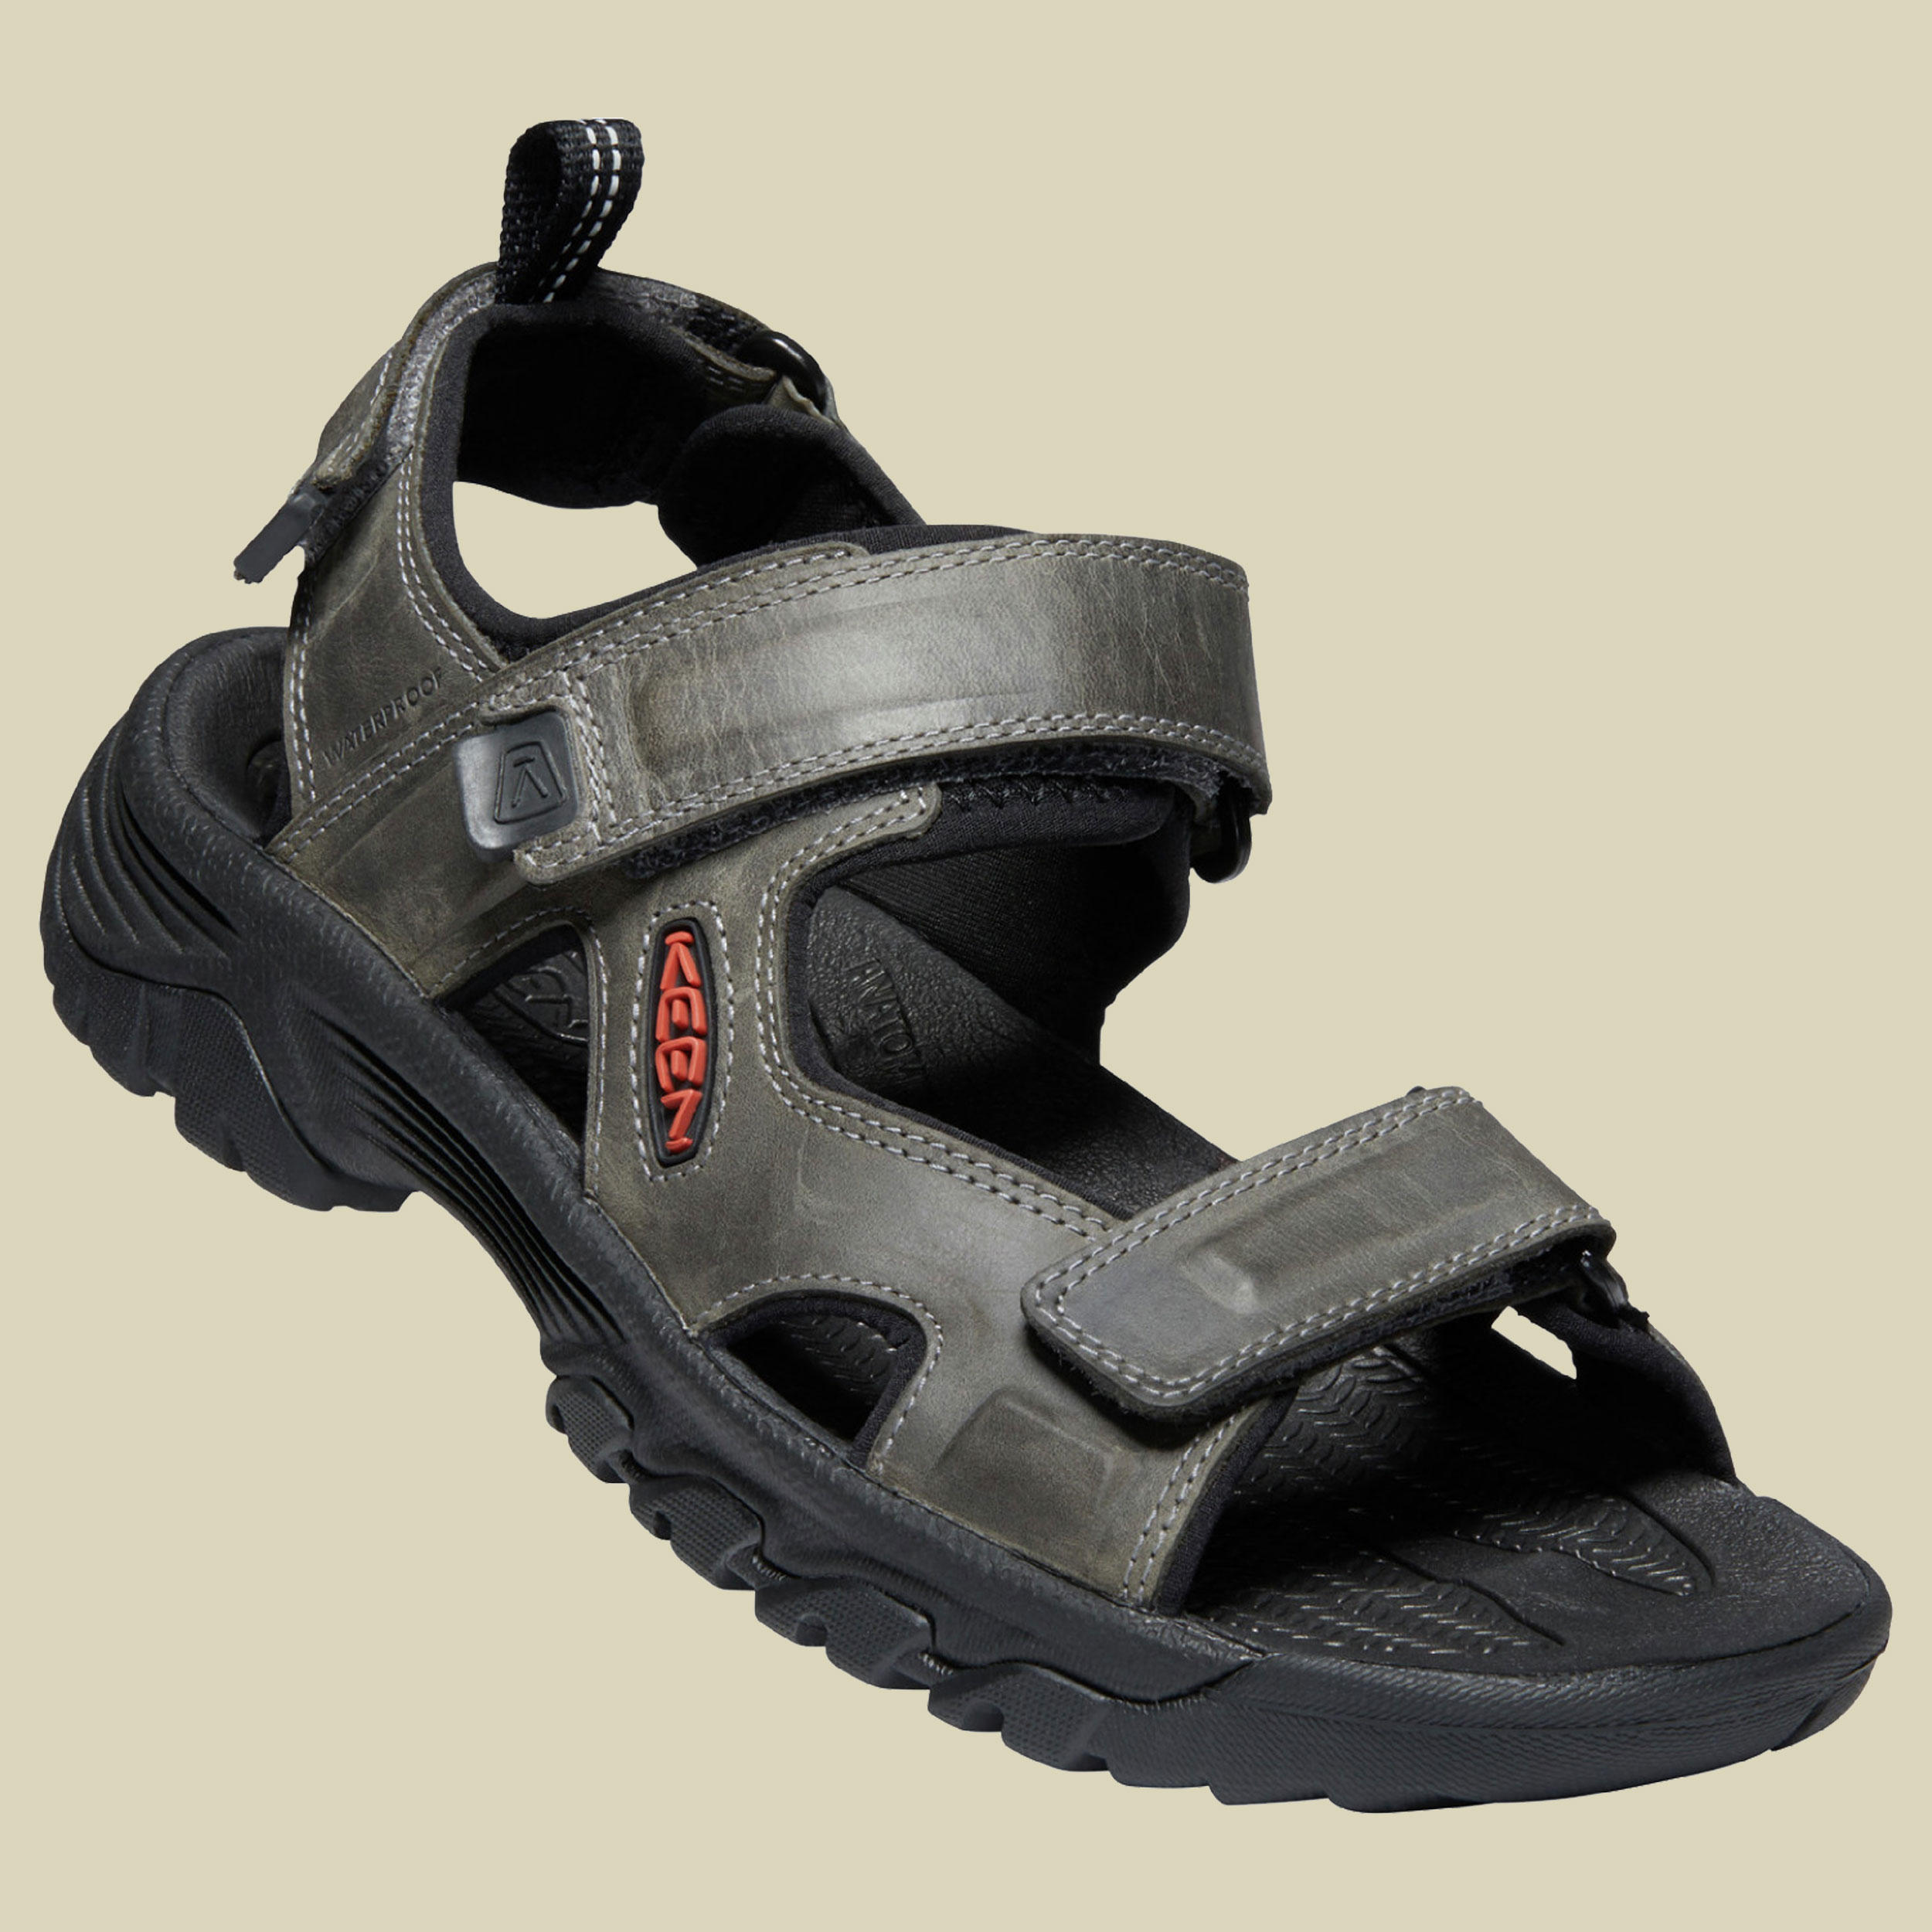 Targhee III Open Toe Sandal Men Größe UK 10,5 Farbe grey/black